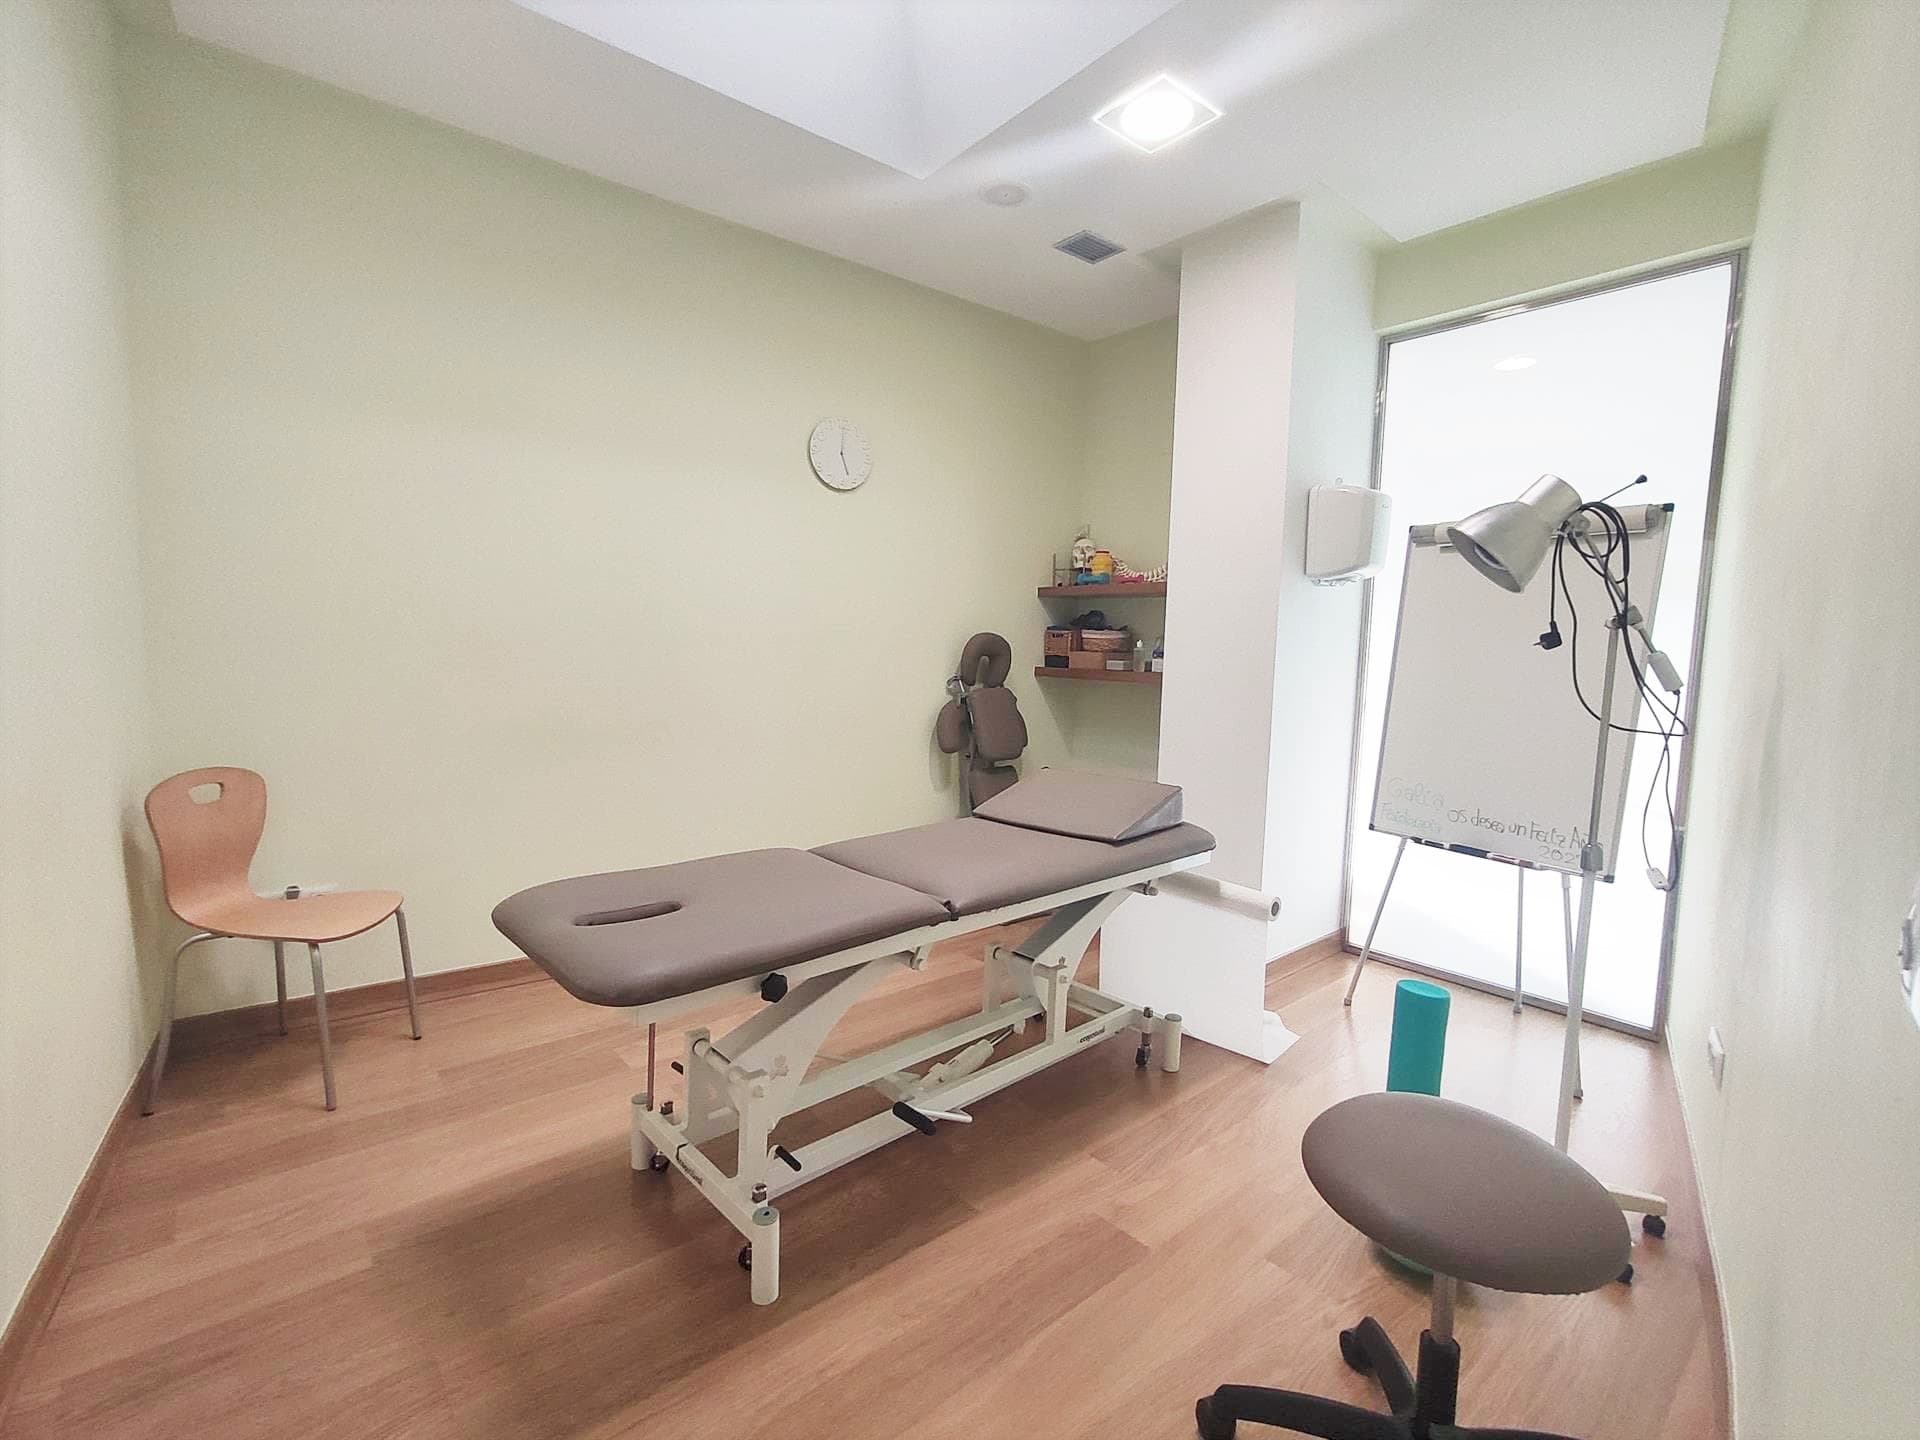 Centro de fisioterapia en Celanova, provincia de Ourense